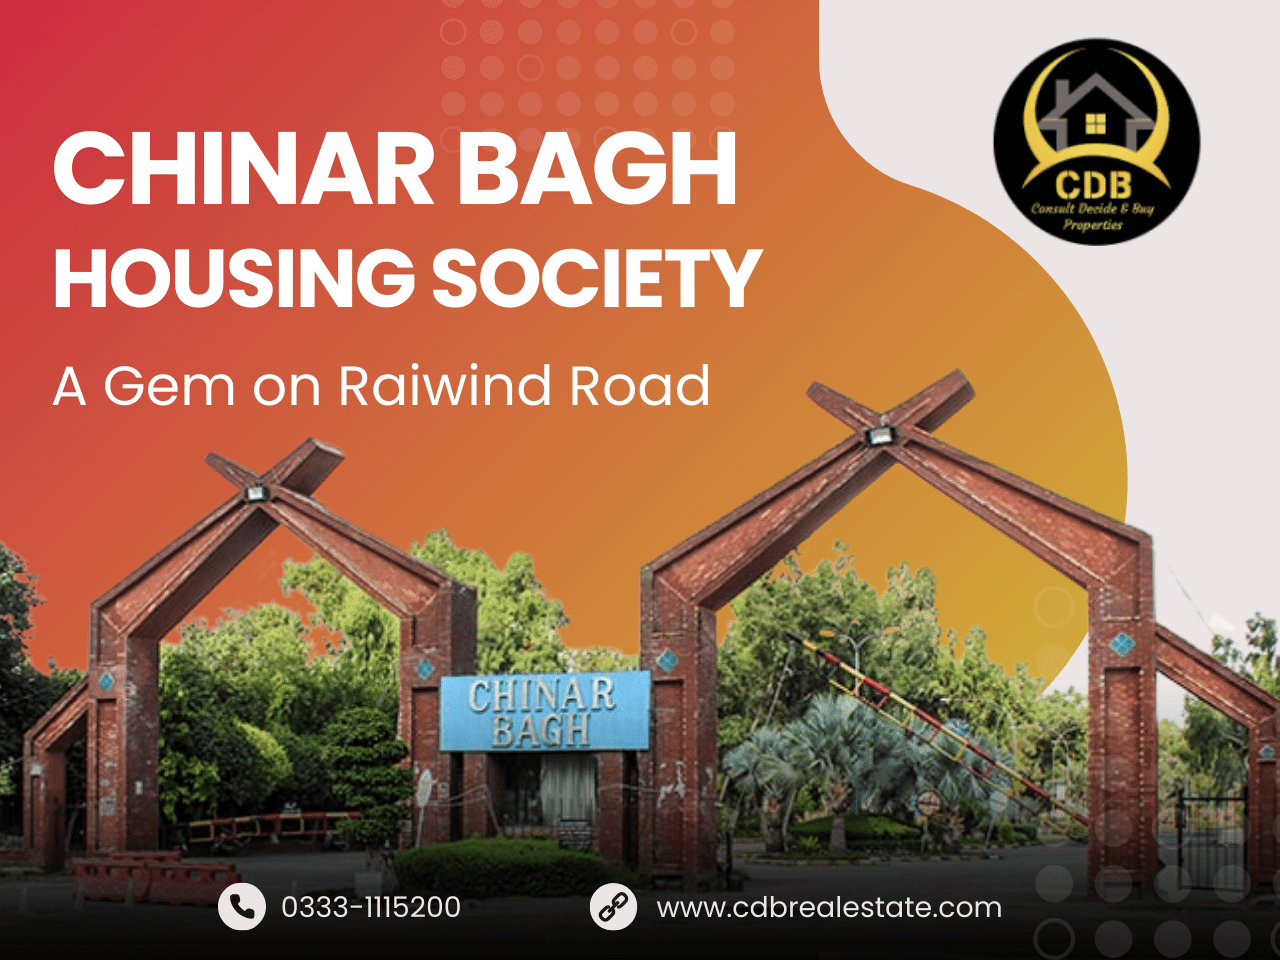 Chinar Bagh Housing Society